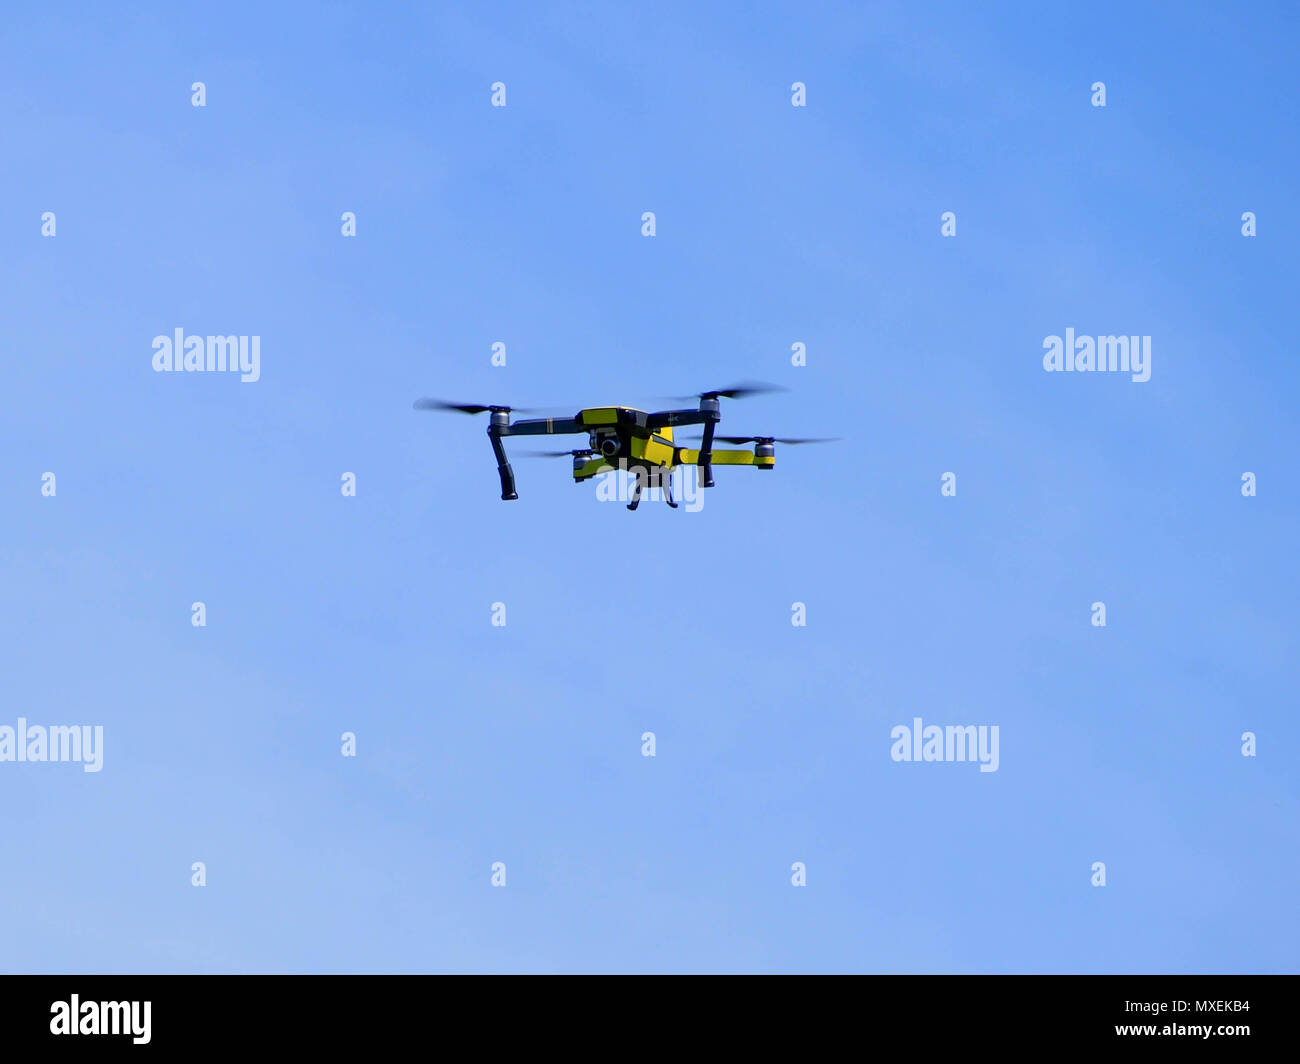 Un drone contrôlé à distance contre un ciel bleu Banque D'Images